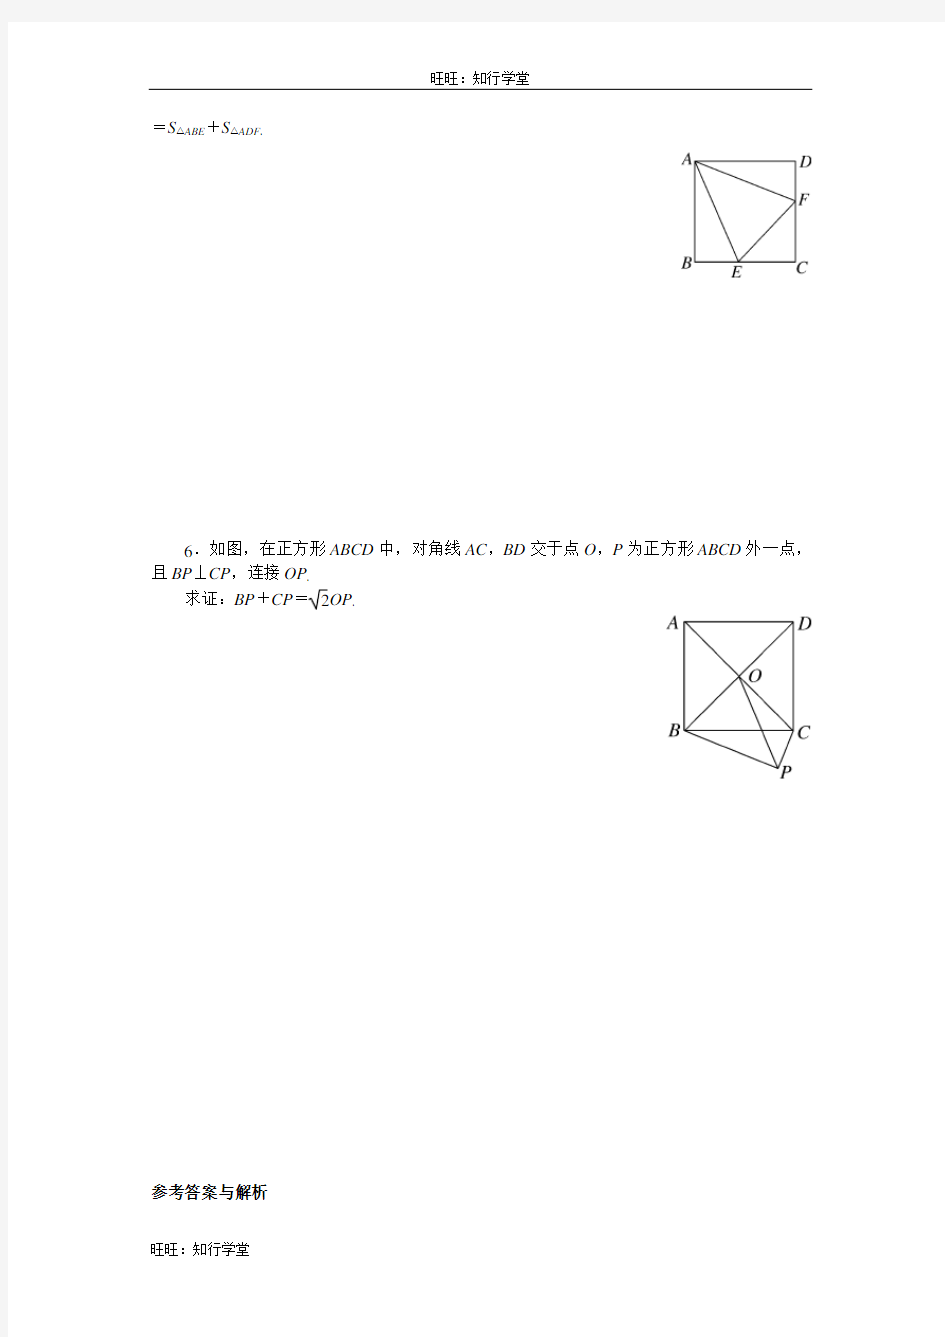 9.解题技巧专题：特殊平行四边形中的解题方法